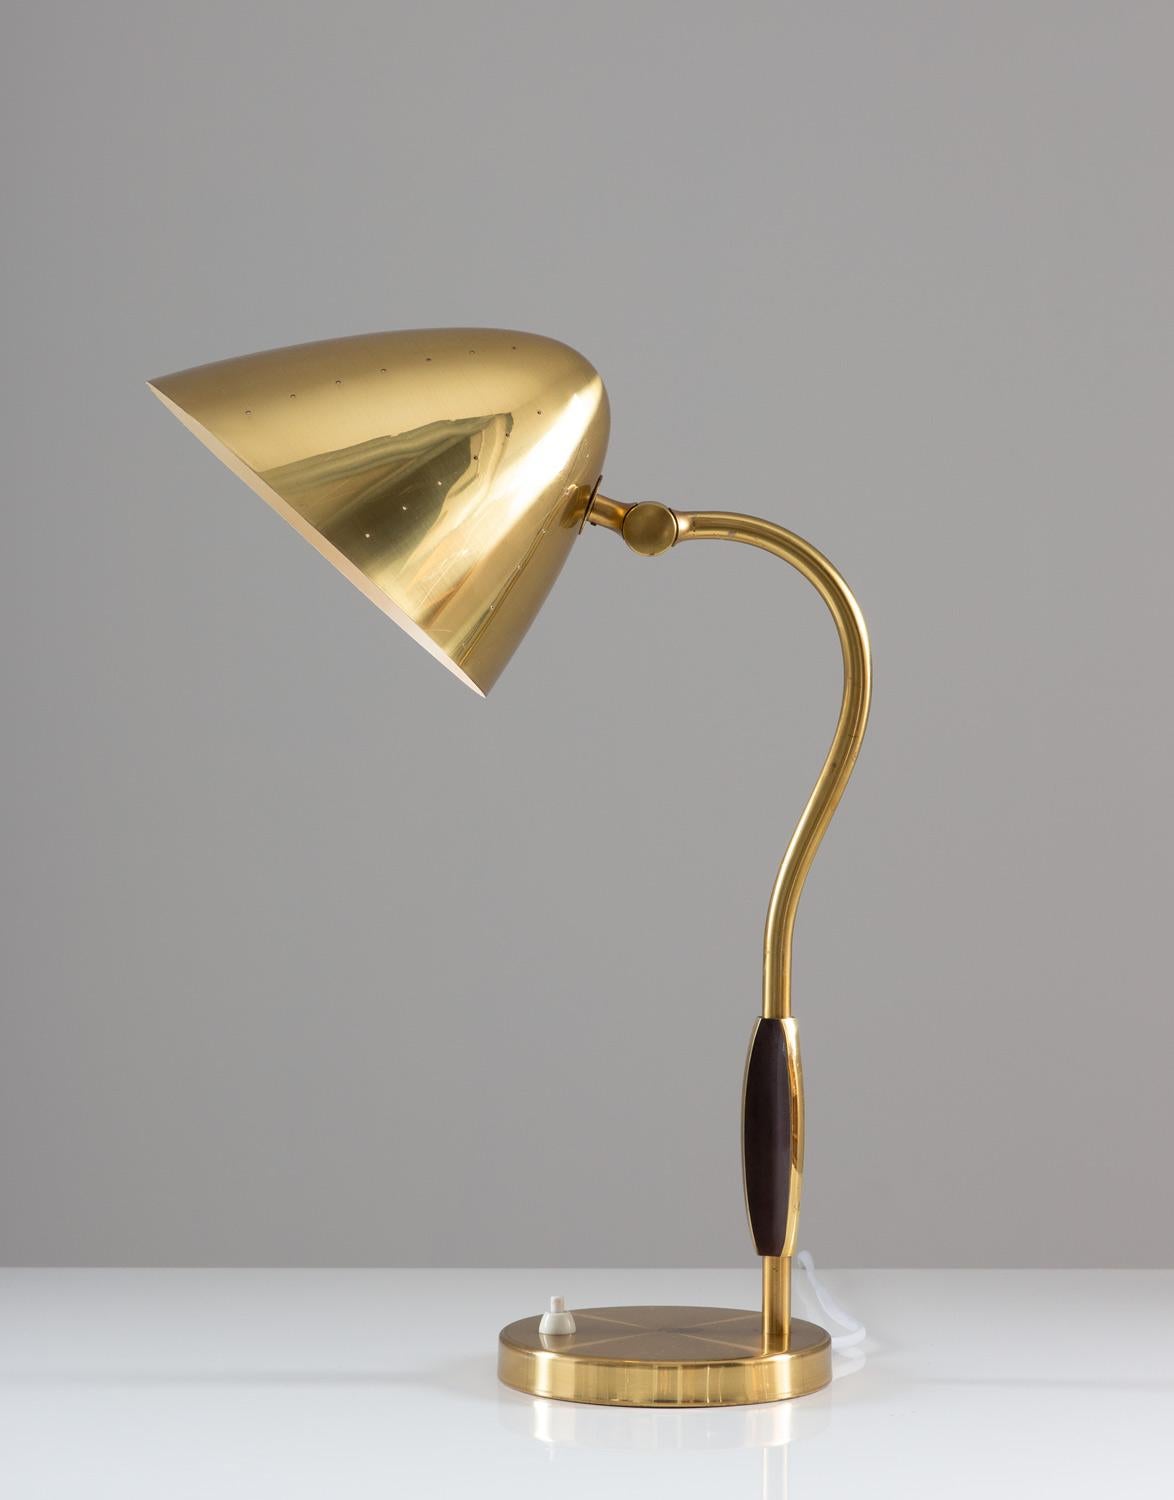 Lampe de table suédoise moderne du milieu du siècle dernier en laiton perforé du fabricant suédois Boréns, années 1940.
Cette lampe rare, avec sa grande taille et son design, attire le regard dans toutes les pièces. La qualité est excellente,